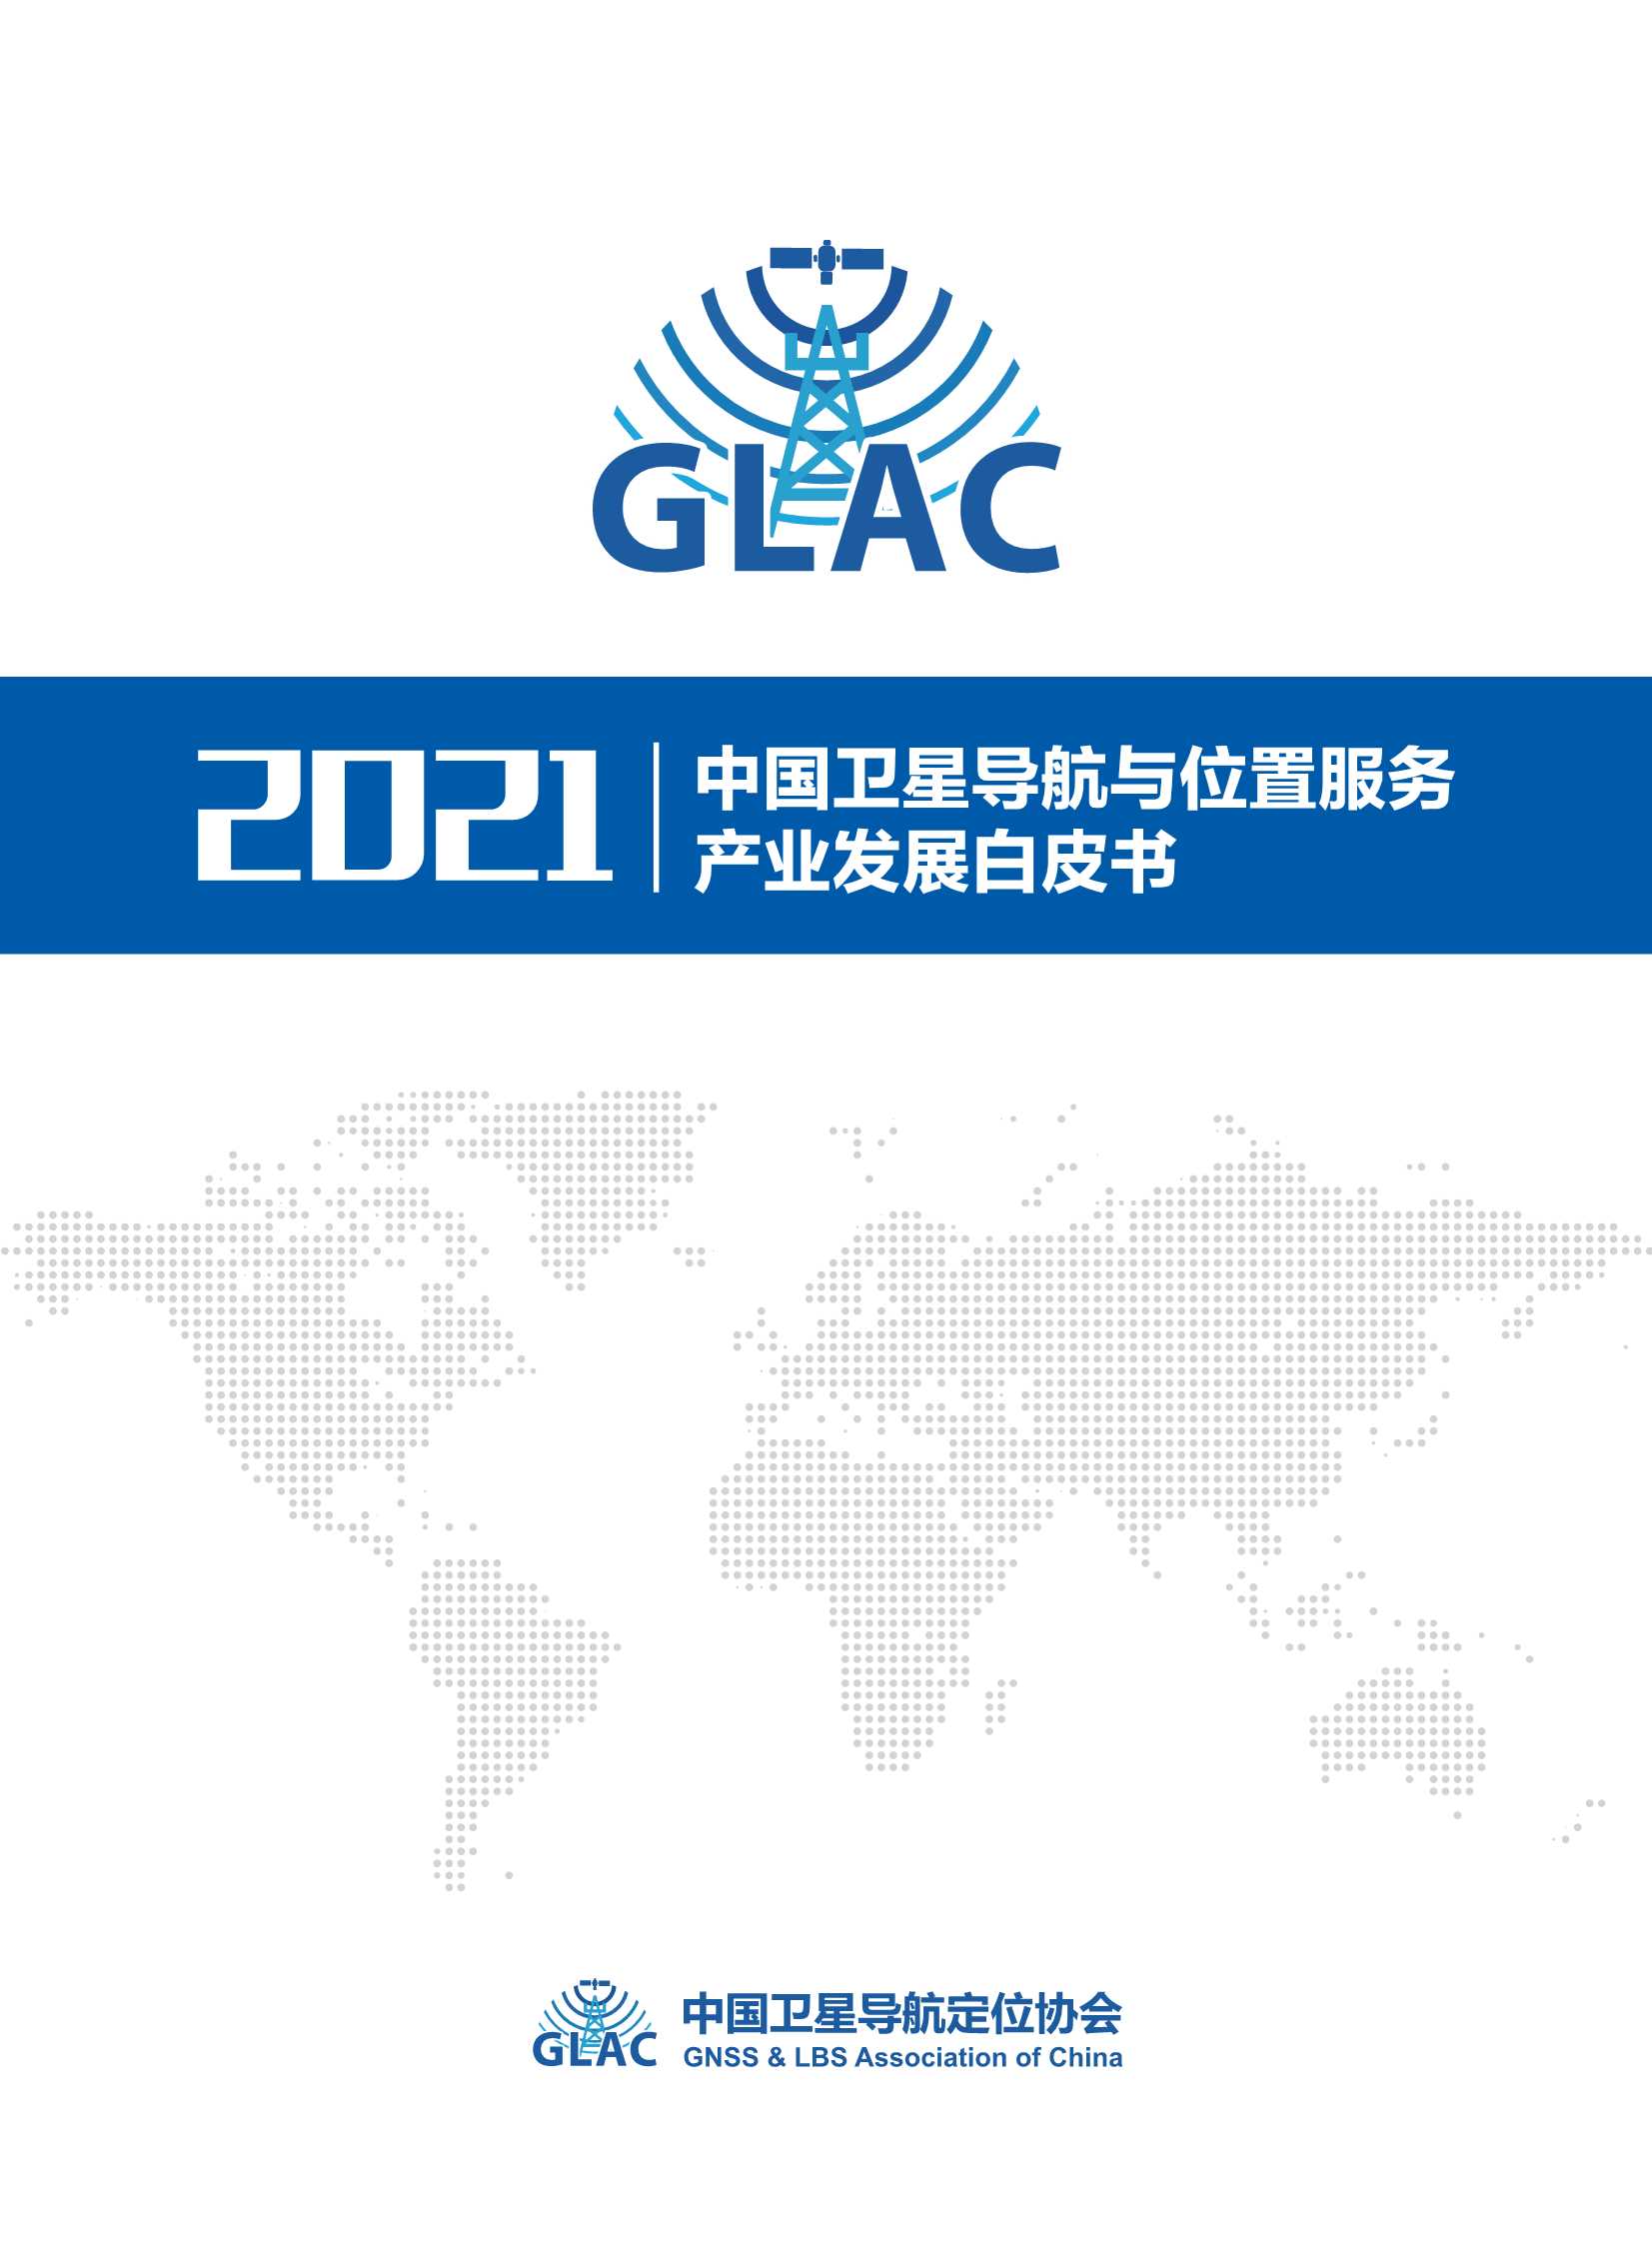 GLAC-2021中国卫星导航与位置服务产业发展白皮书-2021.09-62页